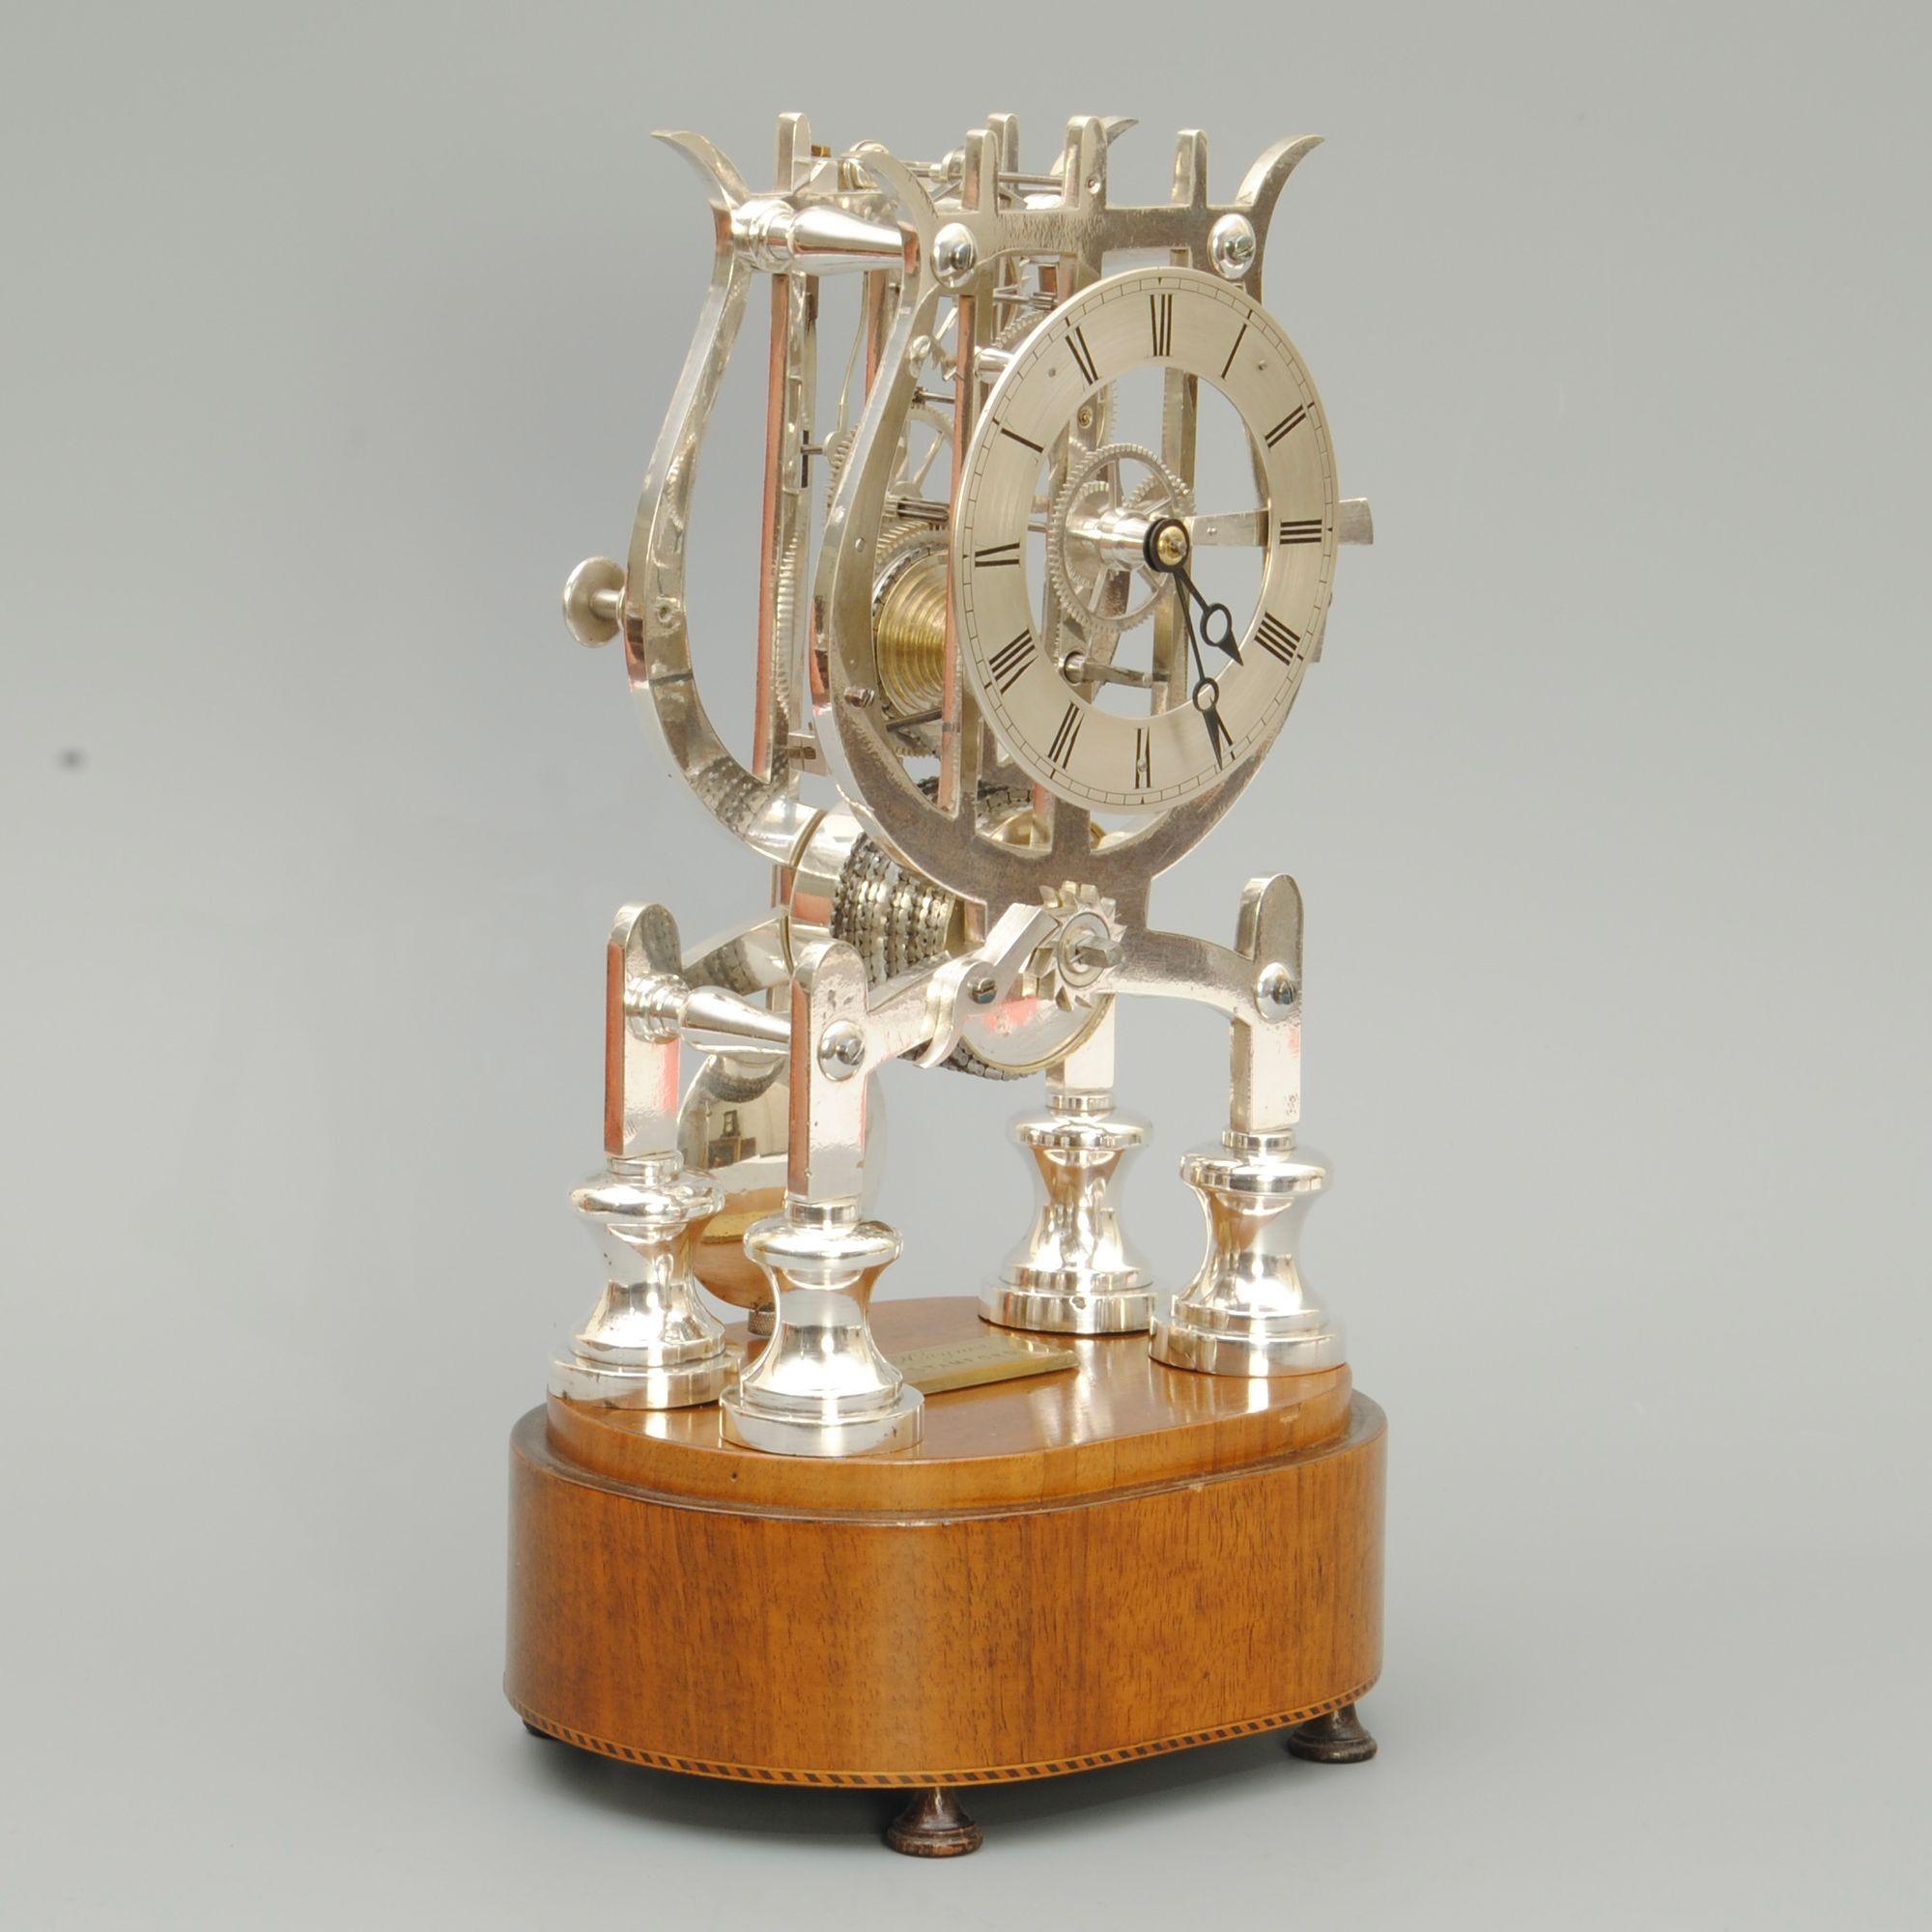 Superbe horloge squelette en forme de lyre, datant du milieu du 19e siècle, fabriquée par Haynes de Stamford. La base d'origine en acajou est munie d'une plaque de fabricant gravée et le dôme en verre est d'origine.
Il s'agit d'une horloge